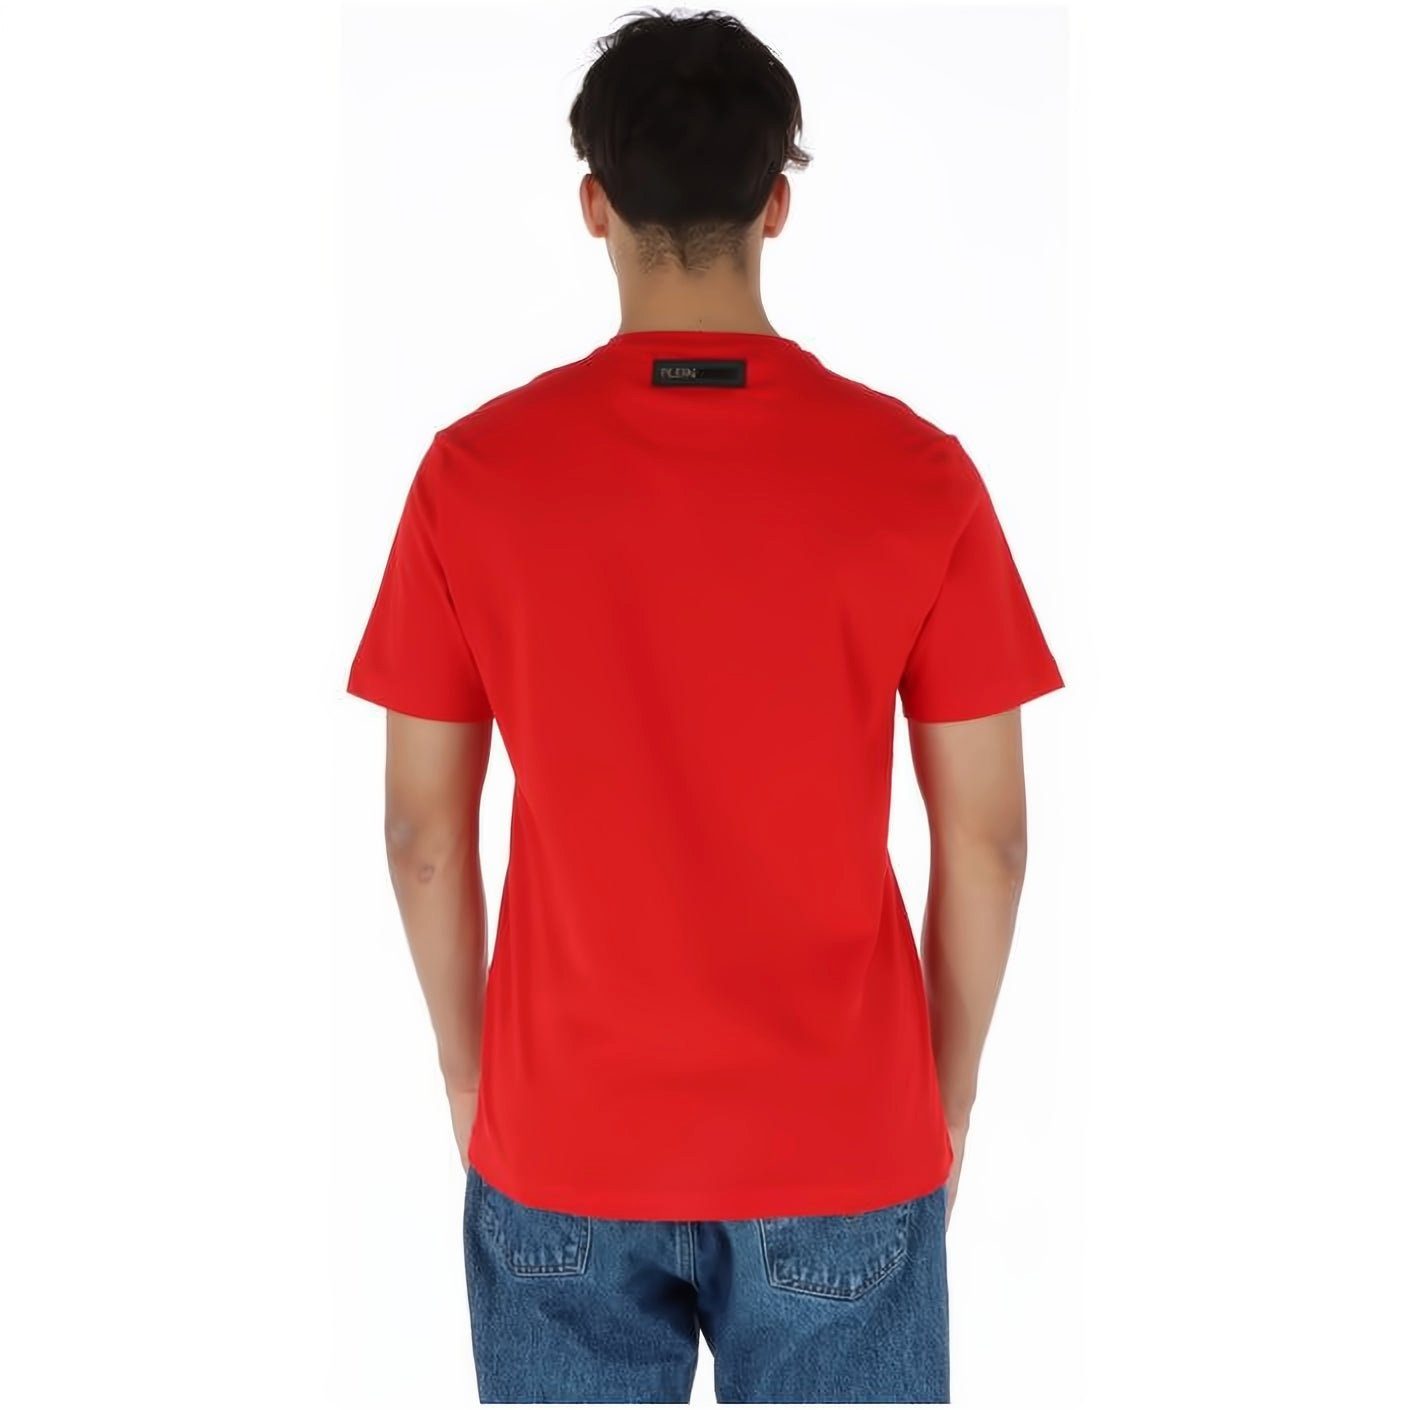 PLEIN SPORT T-Shirt ROUND NECK Look, Stylischer hoher Farbauswahl Tragekomfort, vielfältige